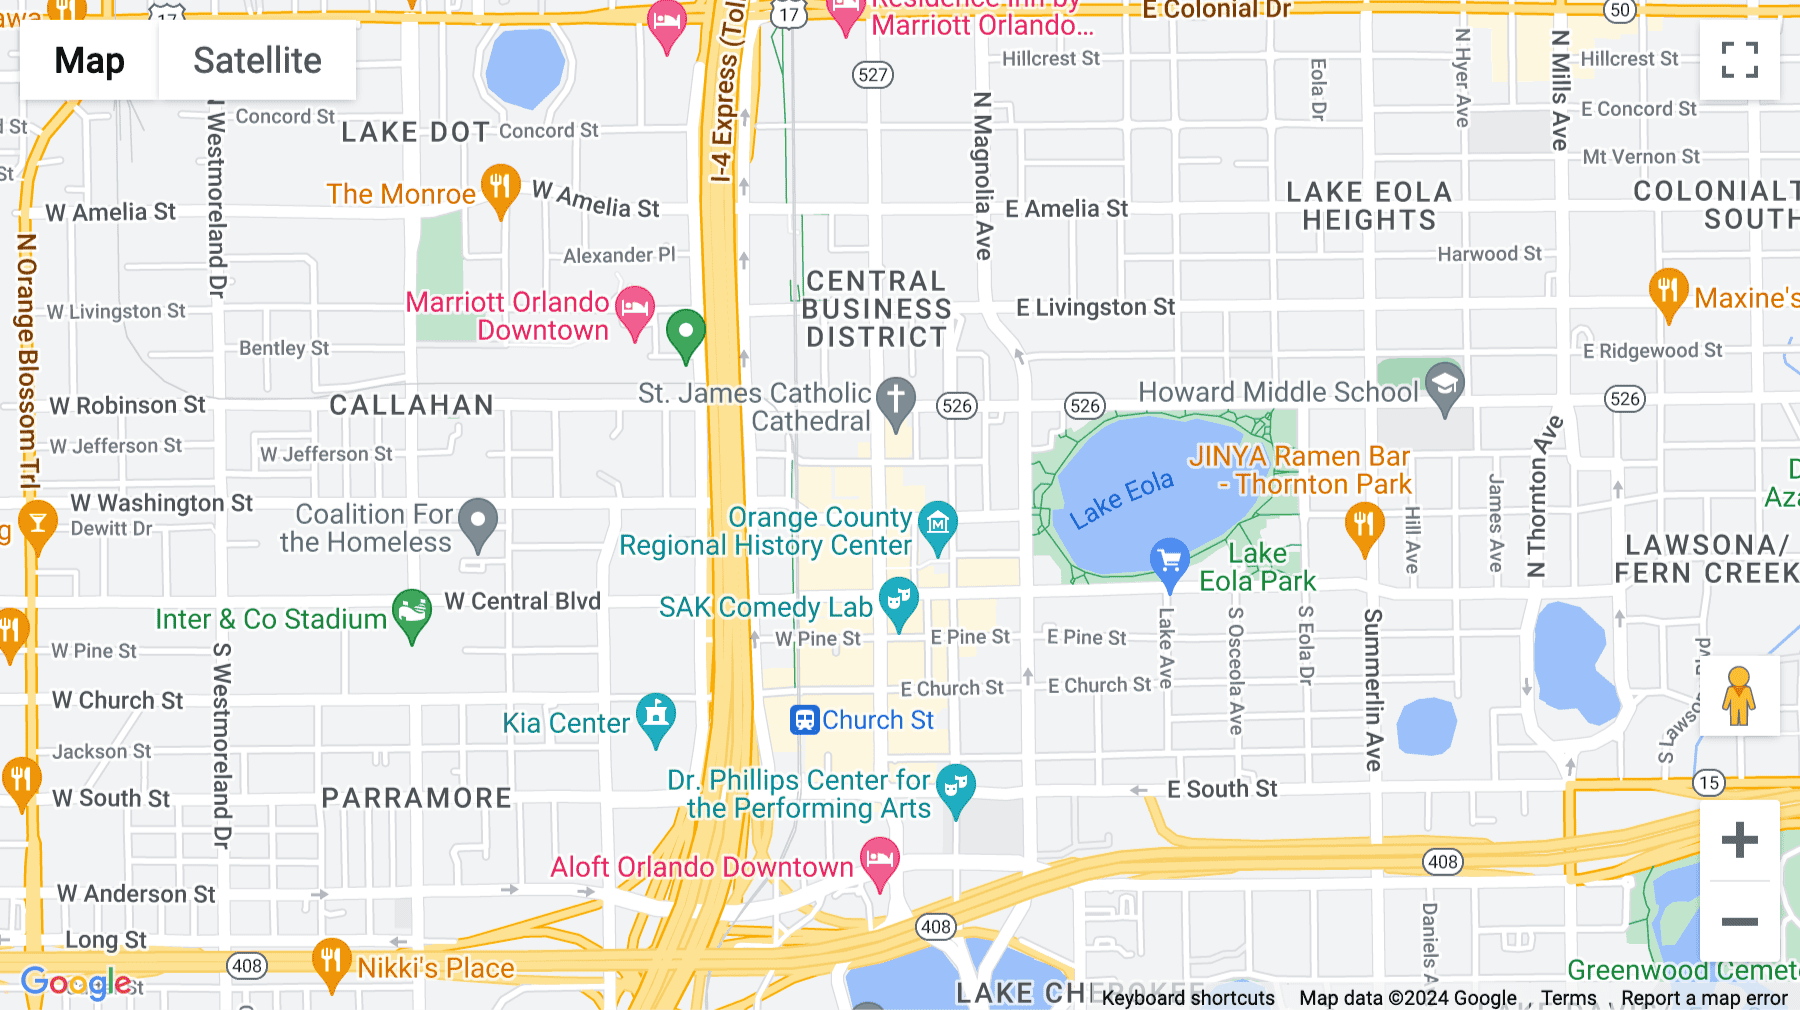 Click for interative map of Downtown North Orange, 111 North Orange Avenue, Suite 800, Orlando